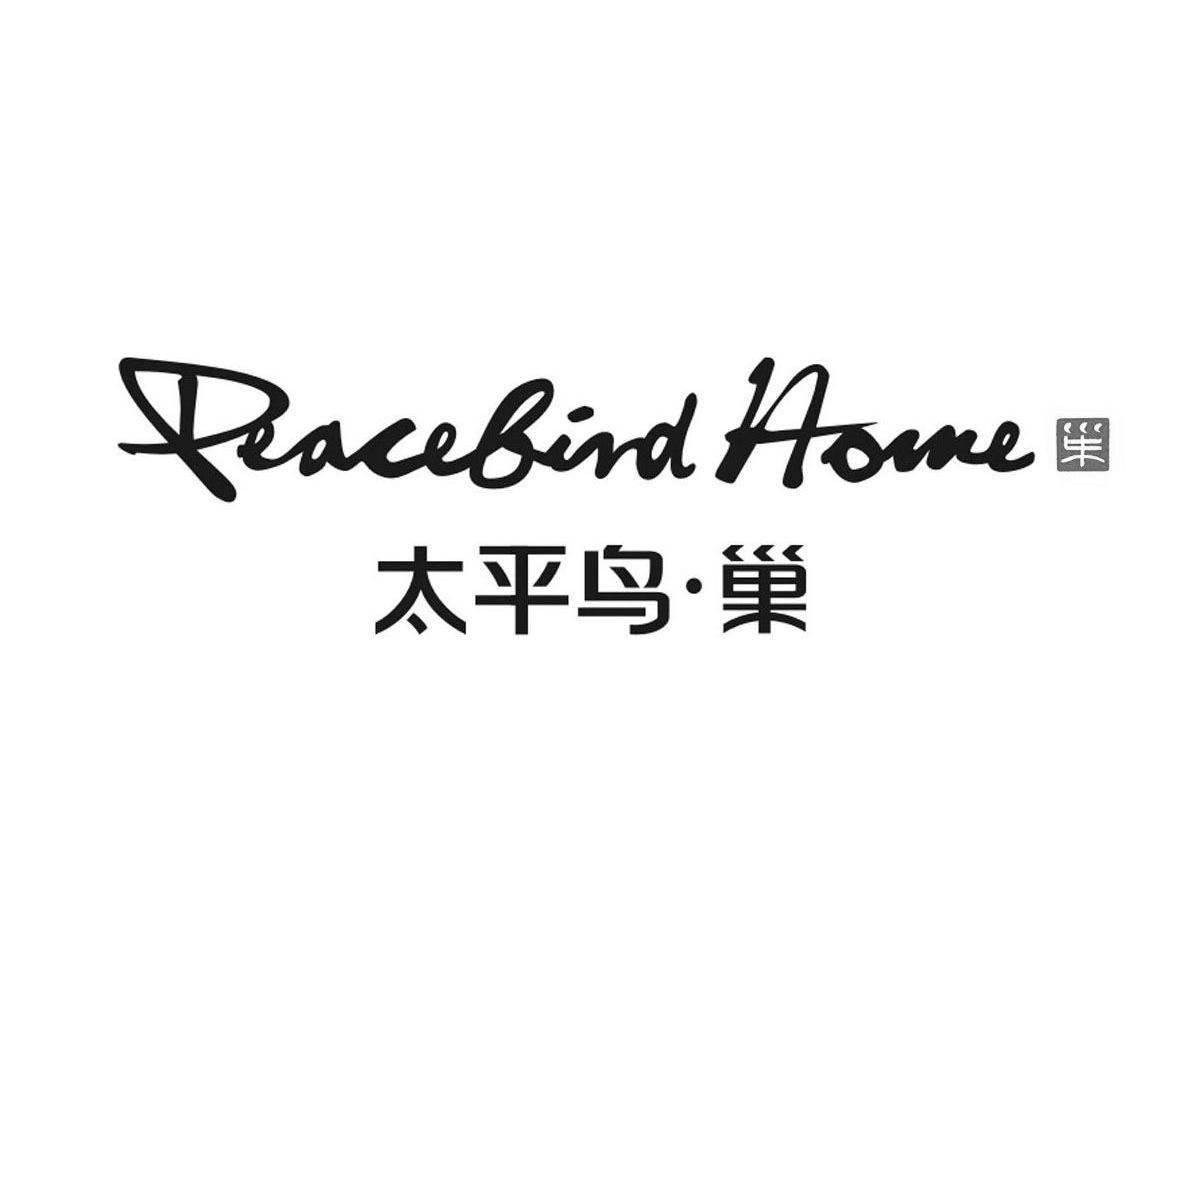 太平鸟·巢 peacebird home 商标公告